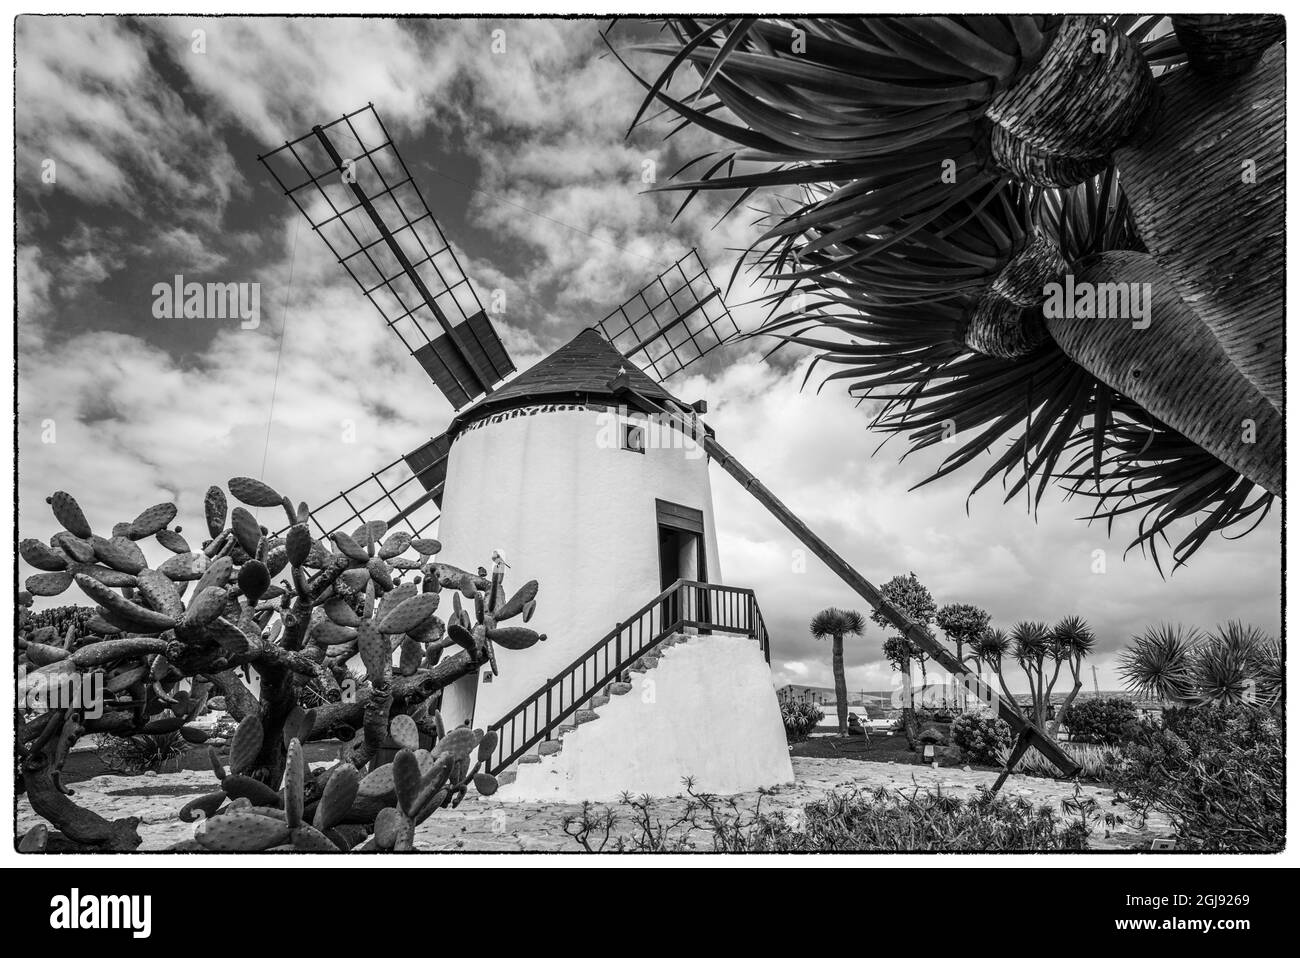 Spagna Isole Canarie Fuerteventura Island, Antigua, tradizionale island windmill Foto Stock